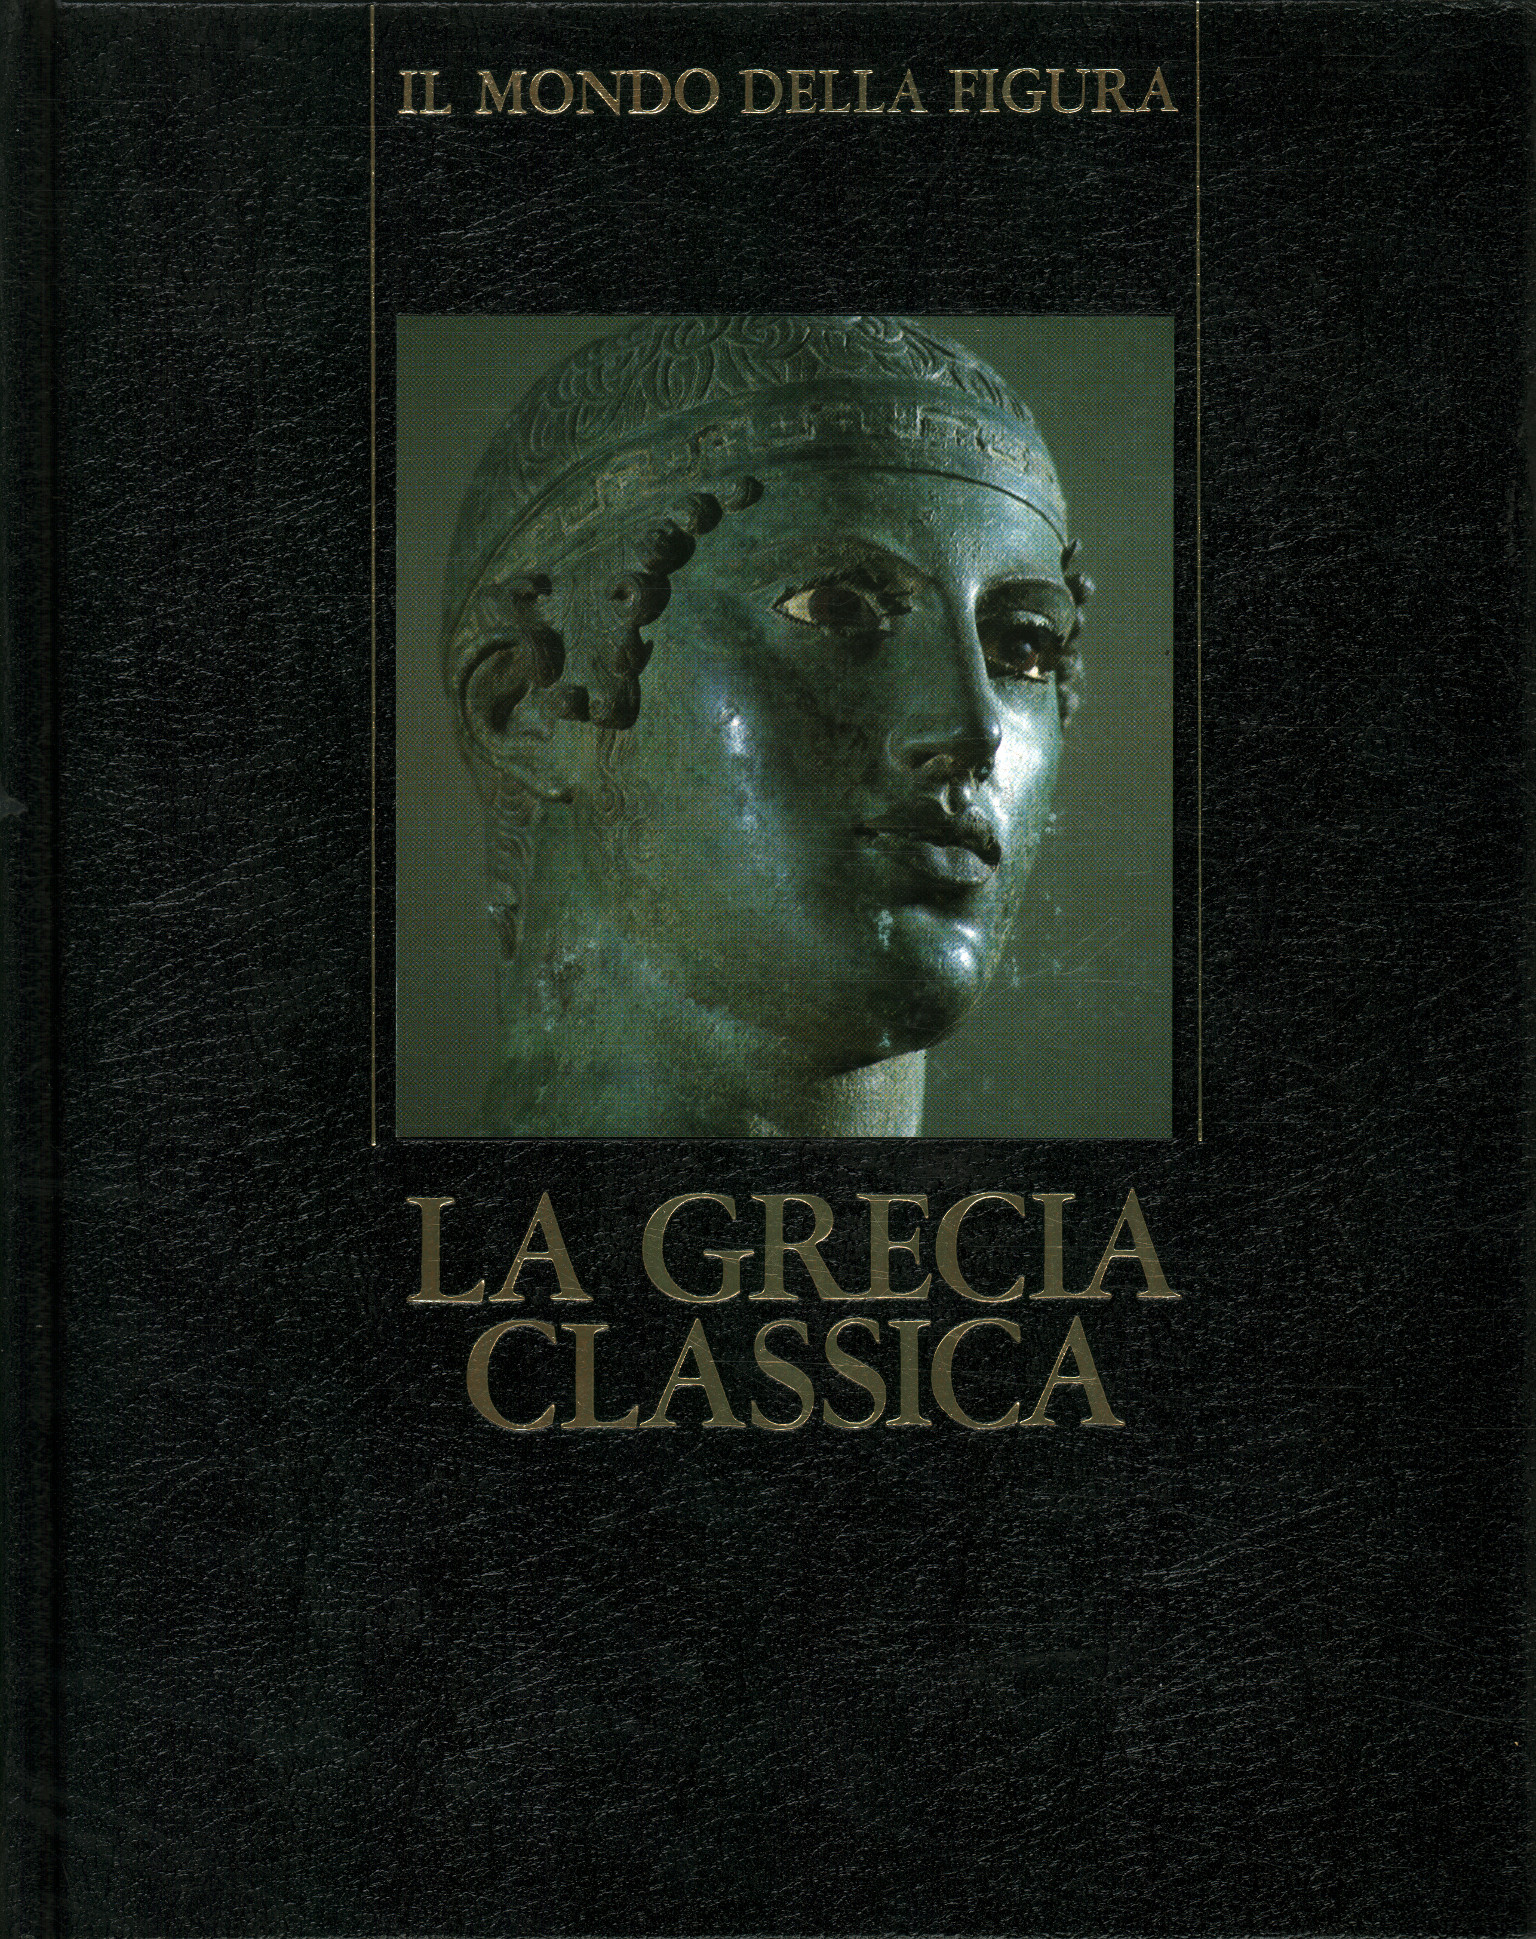 La Grecia classica (480 - 330 a.C.),La Grecia classica (480 - 330 a. C.)